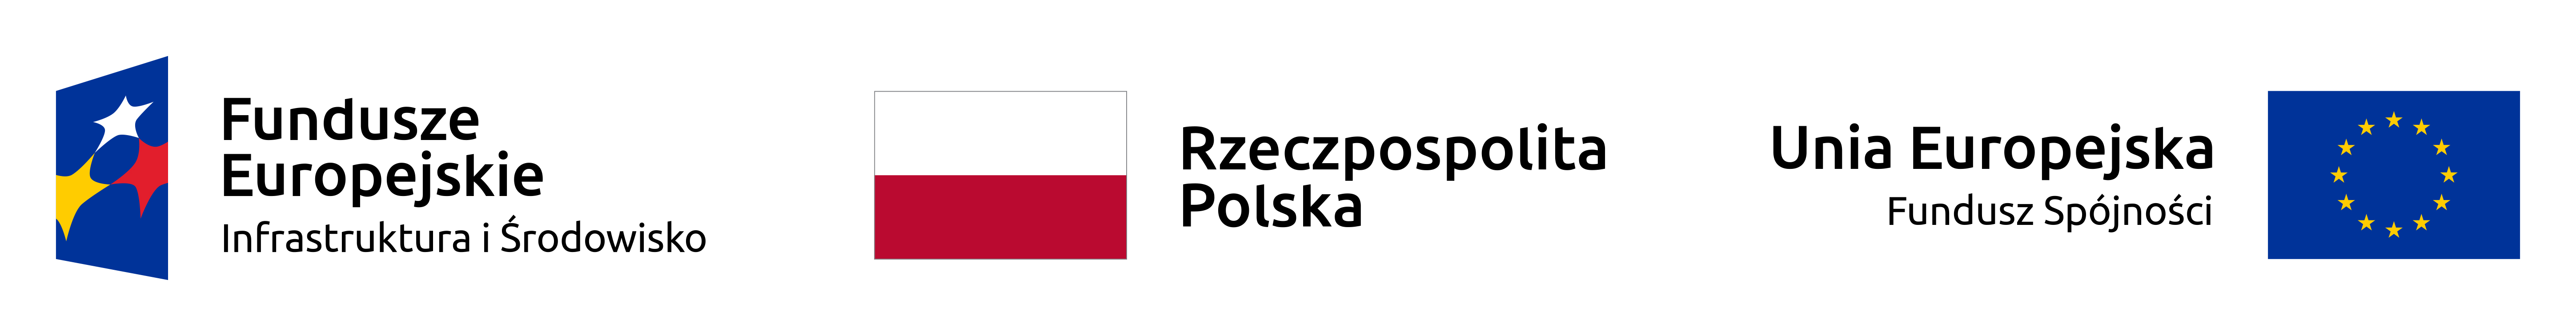 Baner, na którym widnieje logo: Fundusze Europejskie Infrastruktura i Środowisko, flaga Polski i napis Rzeczpospolita Polska, Flaga UE i napis Unia Europejska Fundusz Spójności